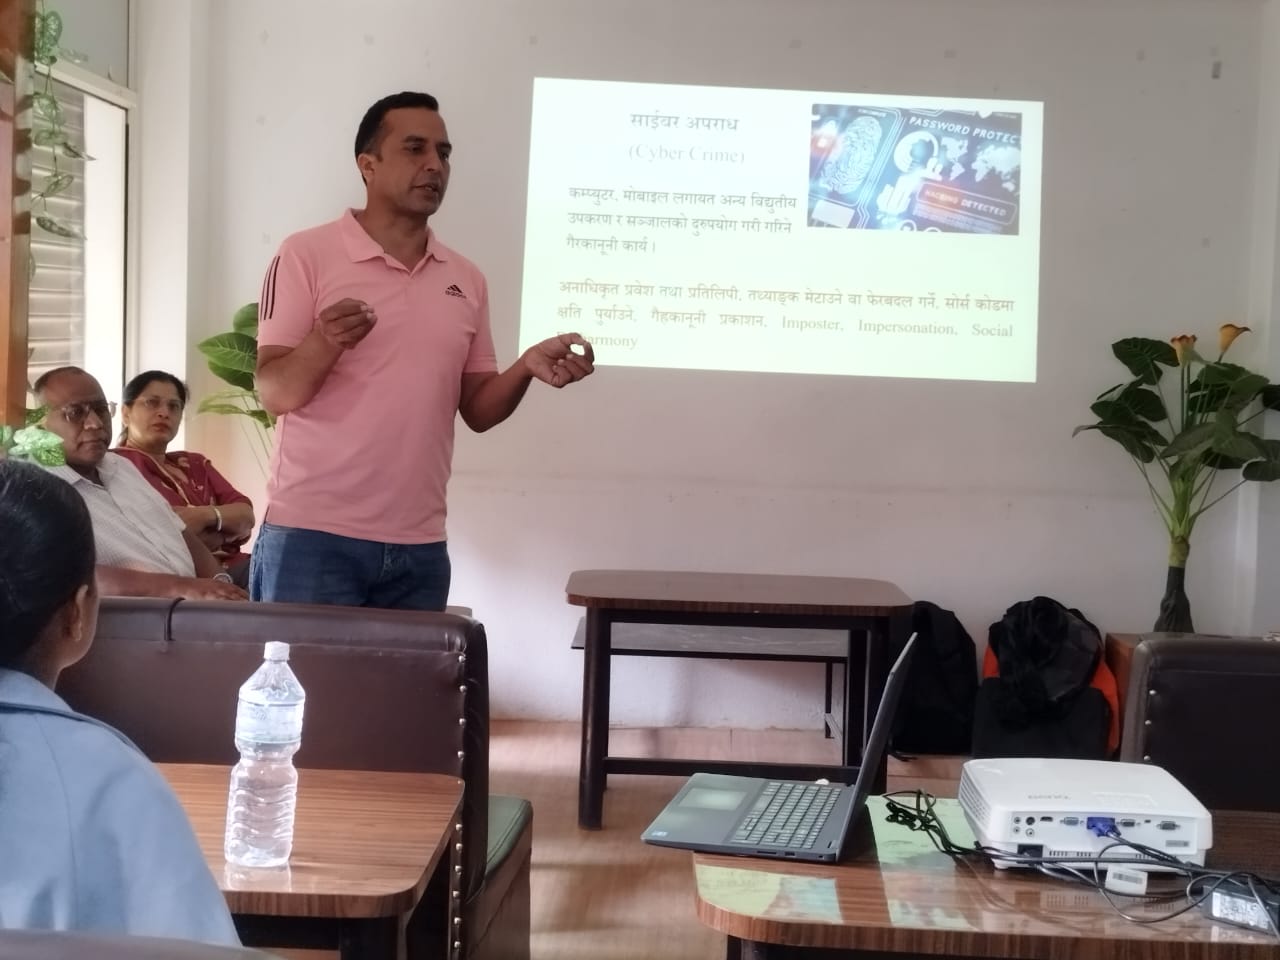 काठमाडौं क्याम्पस द्वारा साइबर सुरक्षा सम्बन्धि अभिमुखिकरण कार्यक्रम